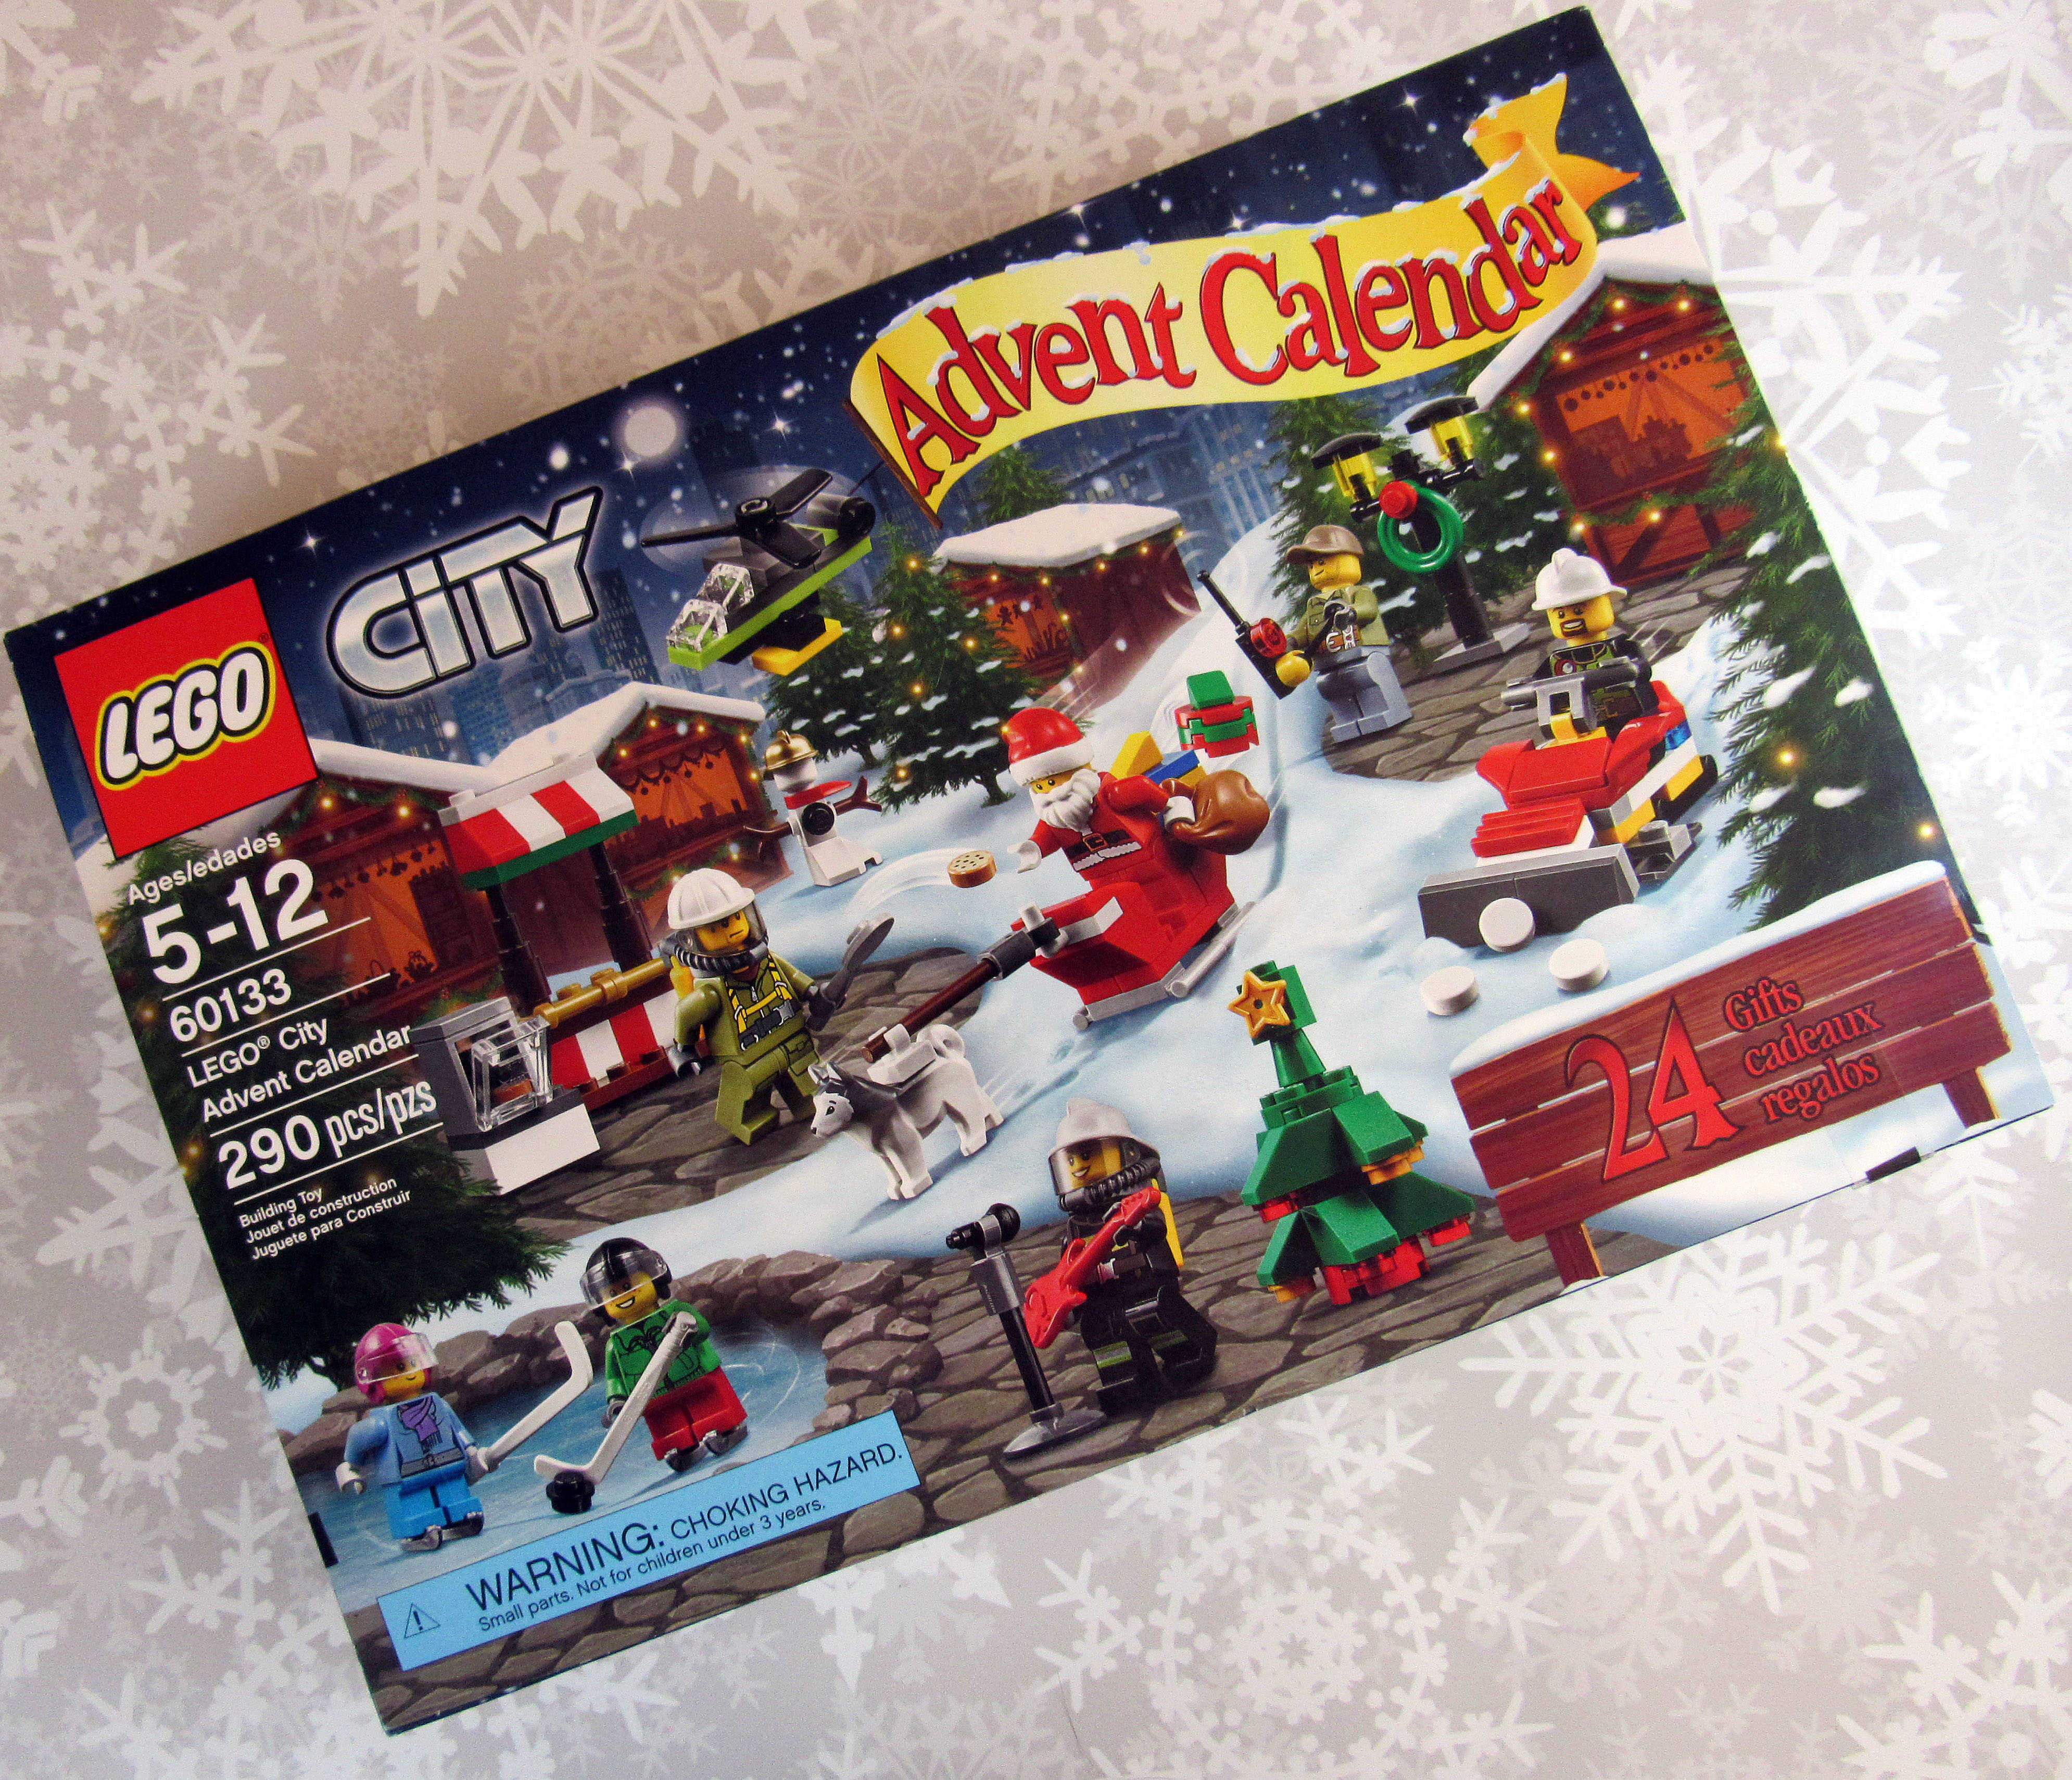 2016 LEGO CITY ADVENT CALENDAR 